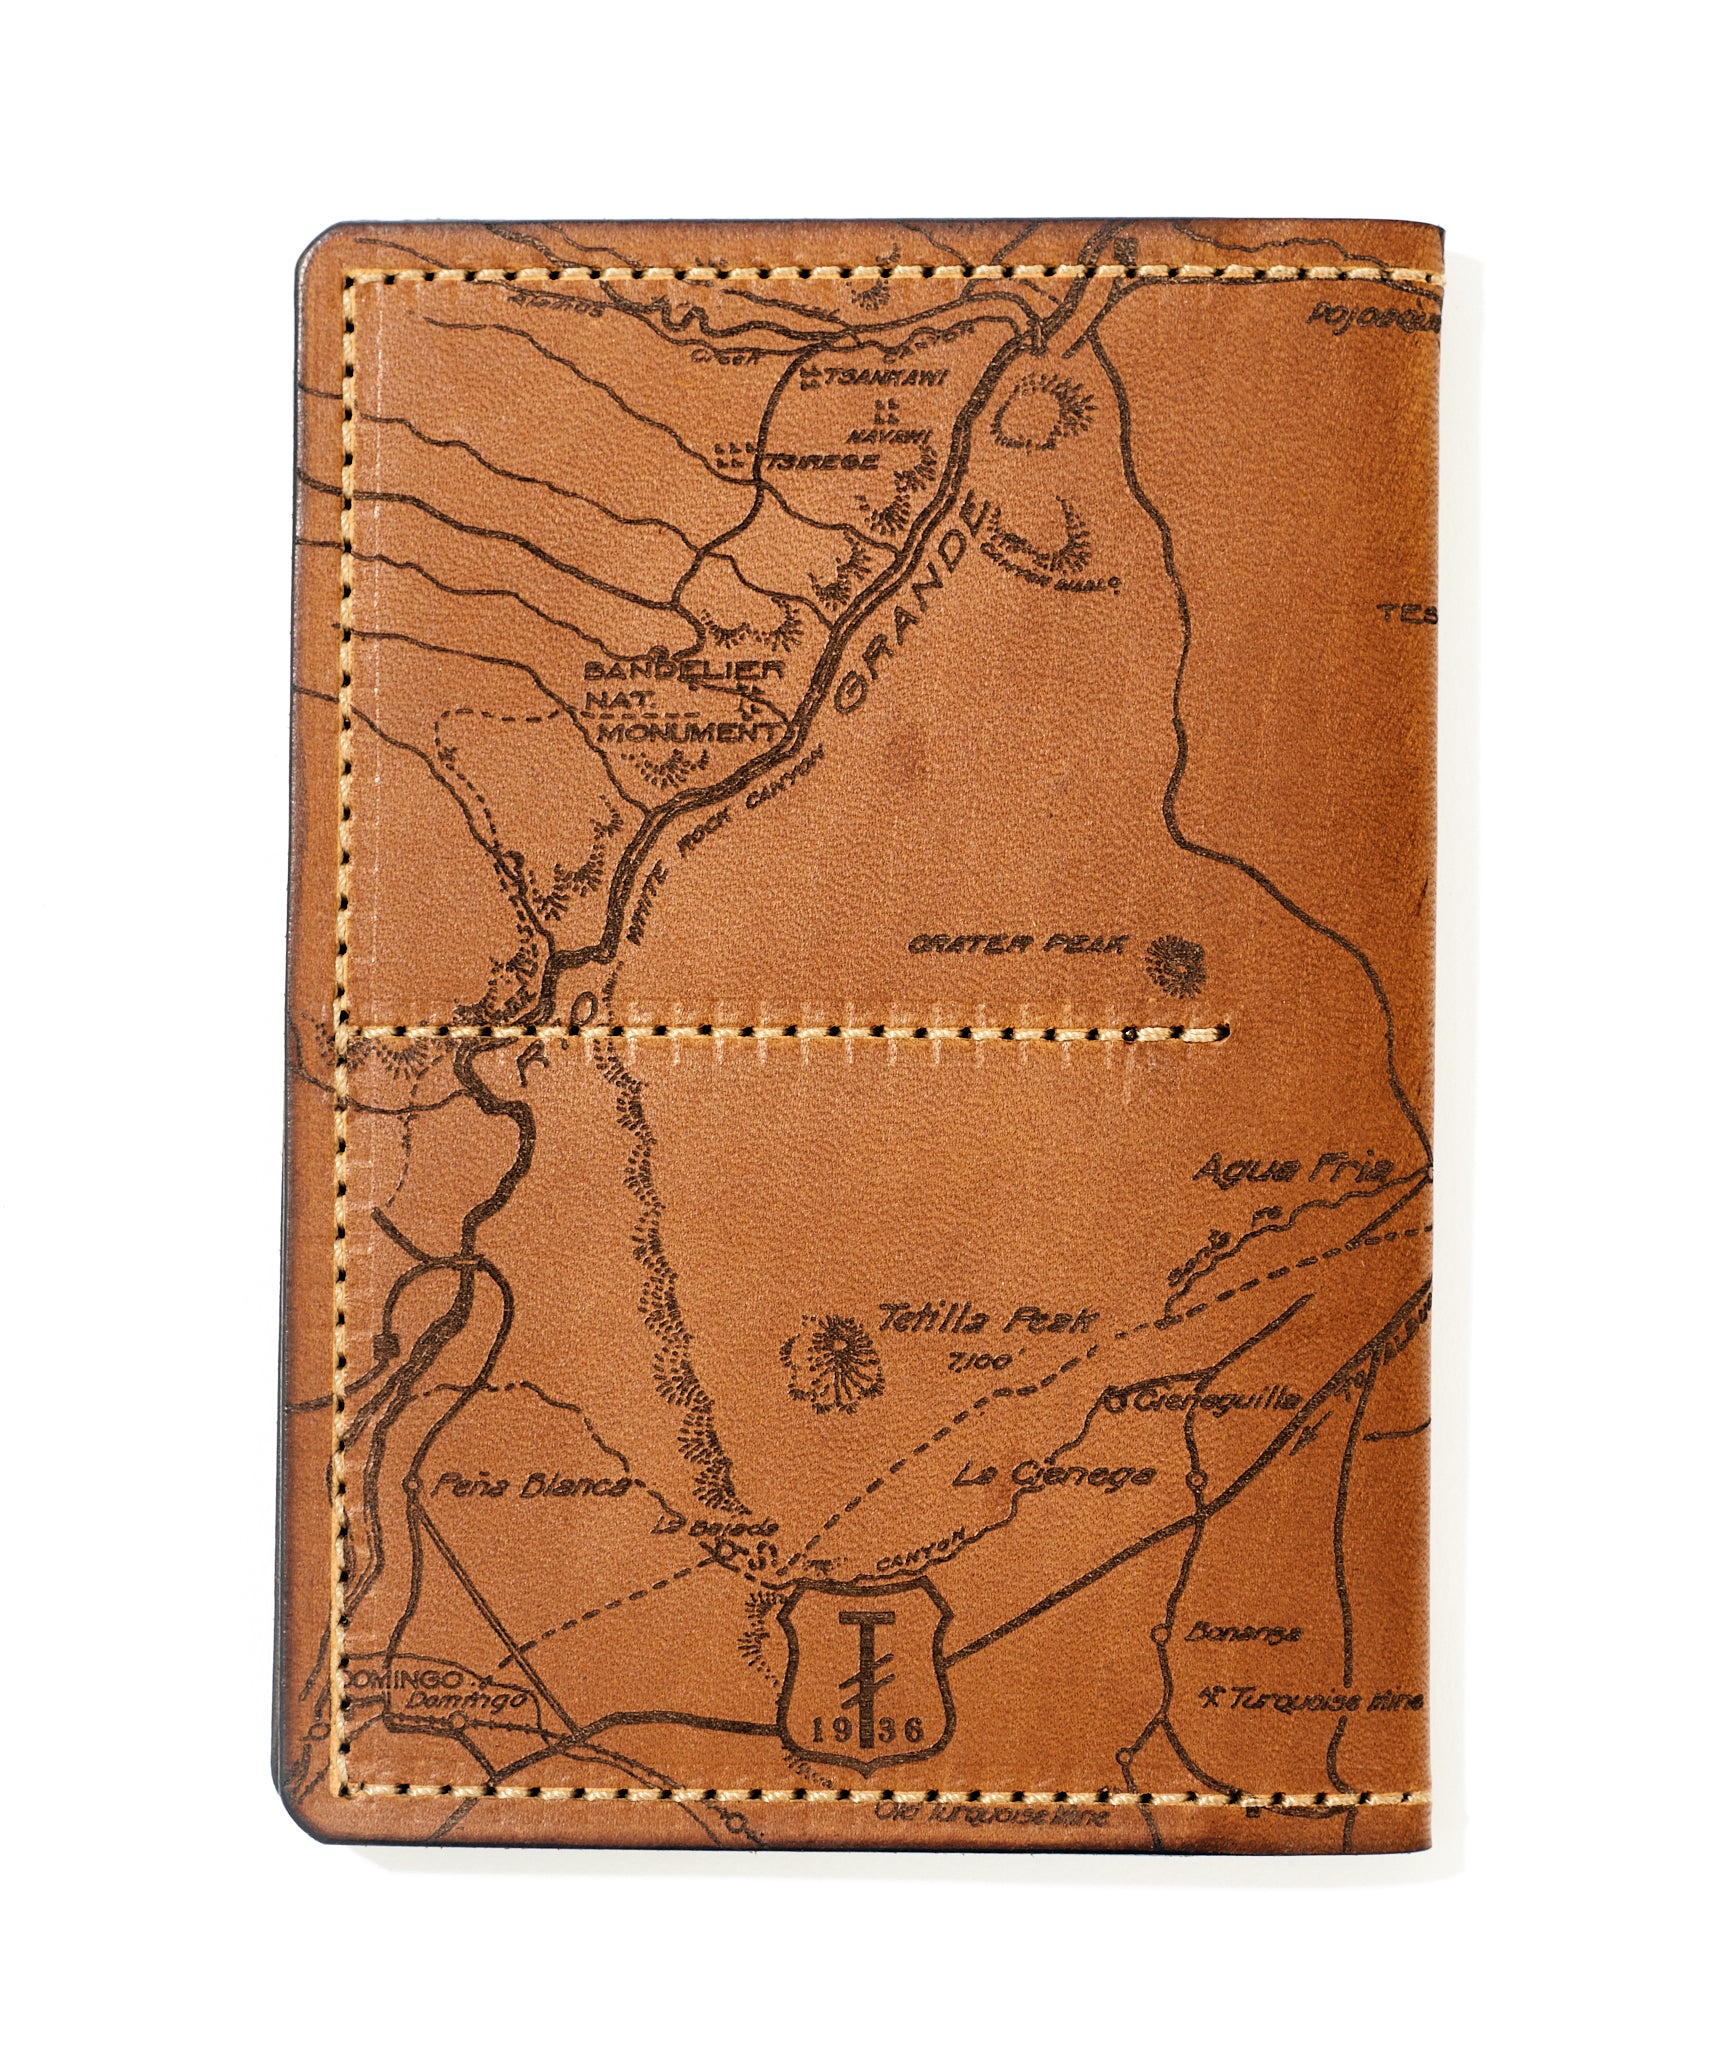 Santa Fe Map Passport Wallet